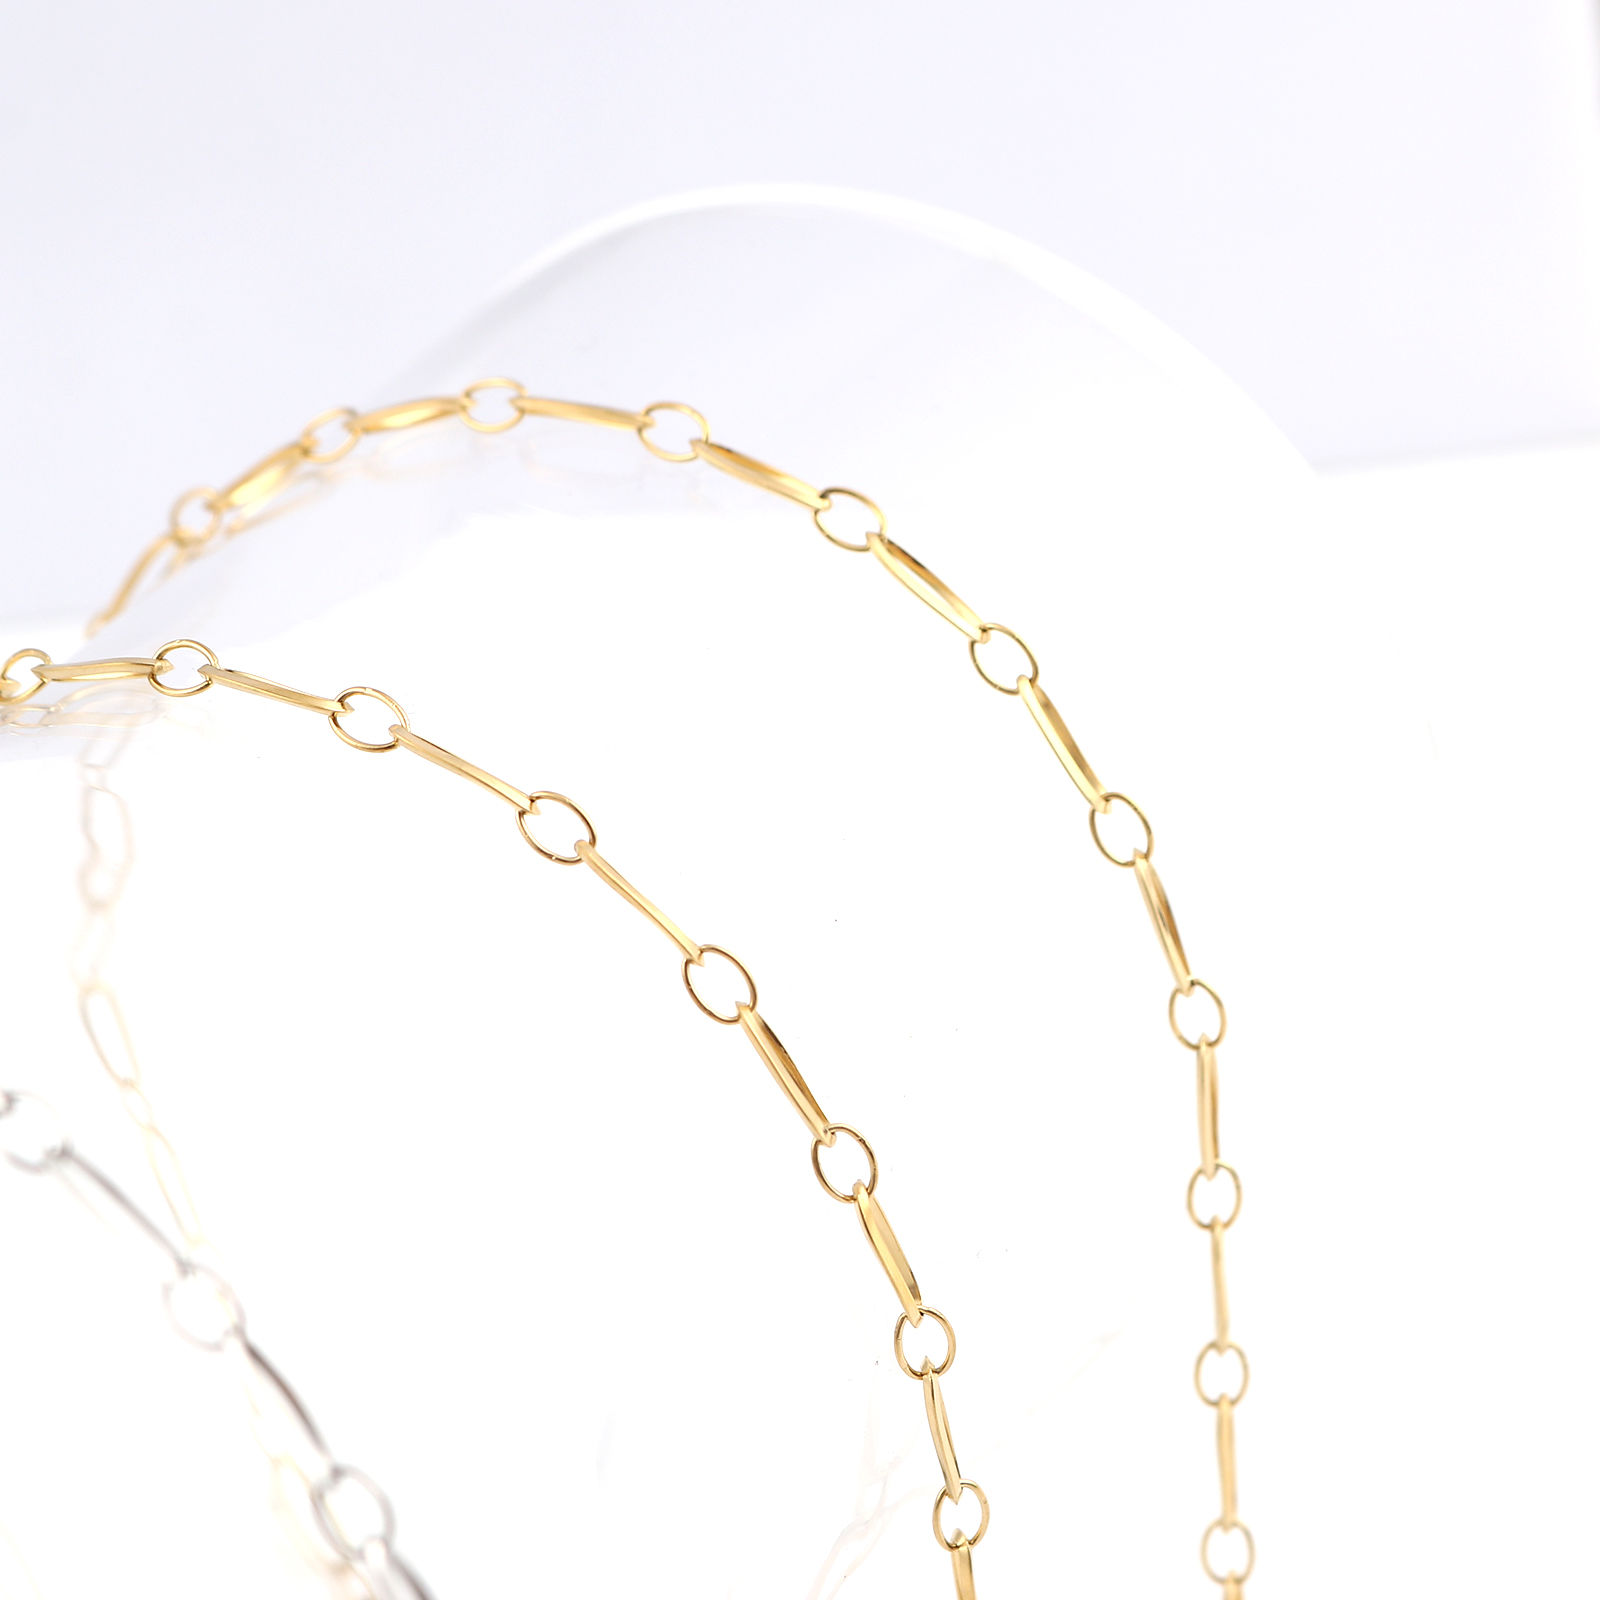 Bild von Edelstahl Halskette Vergoldet Oval 50cm lang, 1 Strang